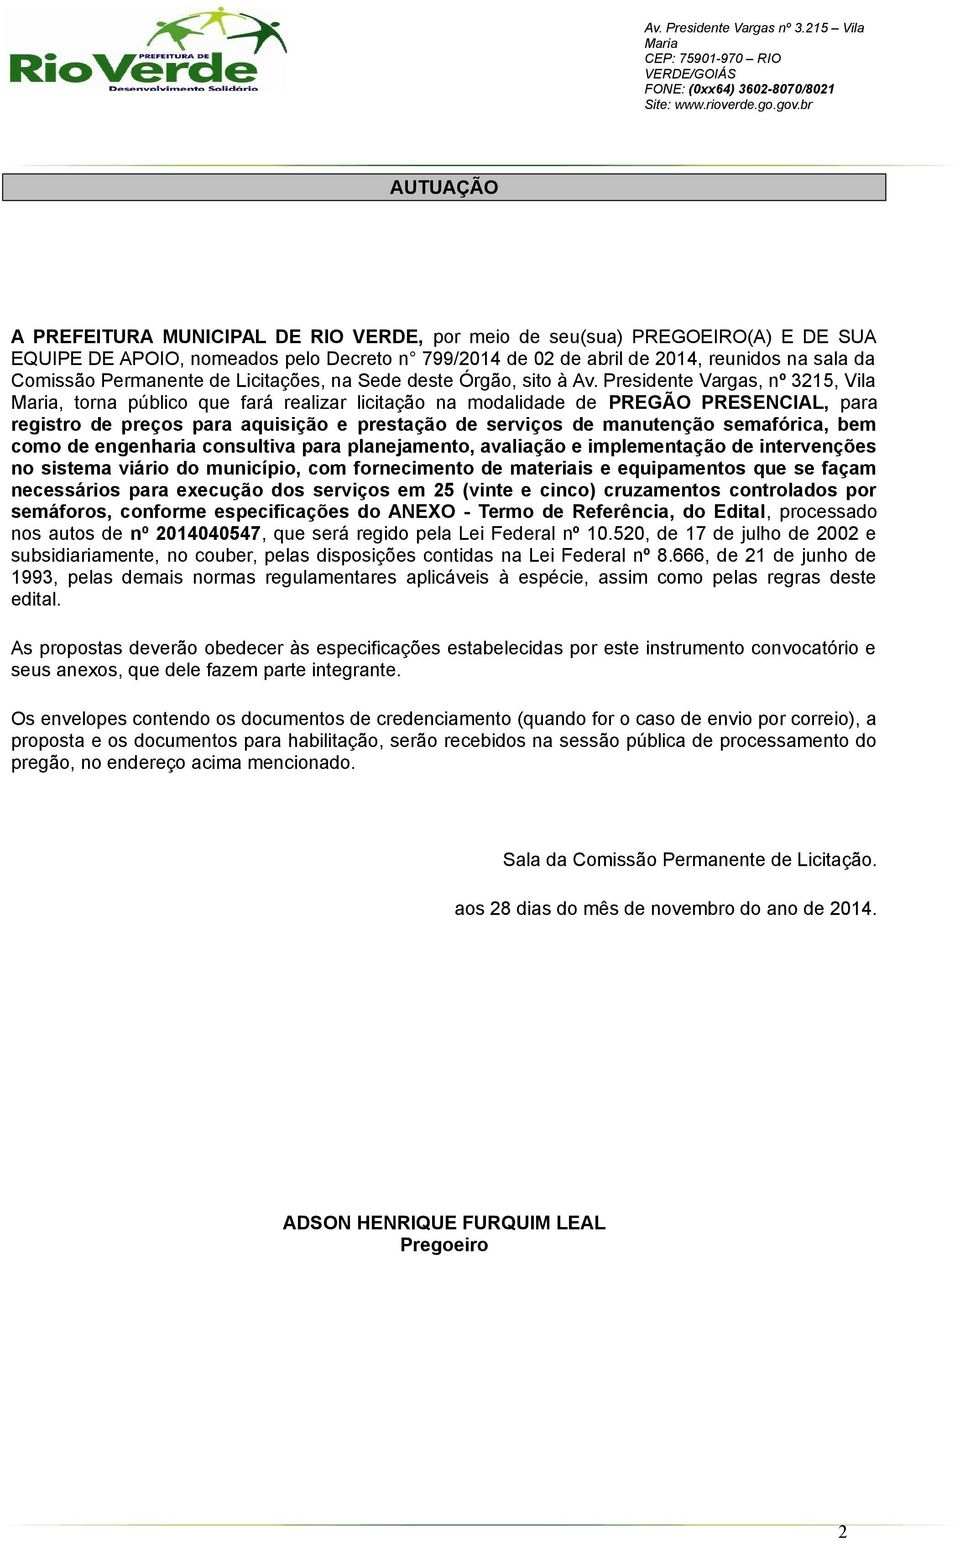 Presidente Vargas, nº 3215, Vila, torna público que fará realizar licitação na modalidade de PREGÃO PRESENCIAL, para registro de preços para aquisição e prestação de serviços de manutenção